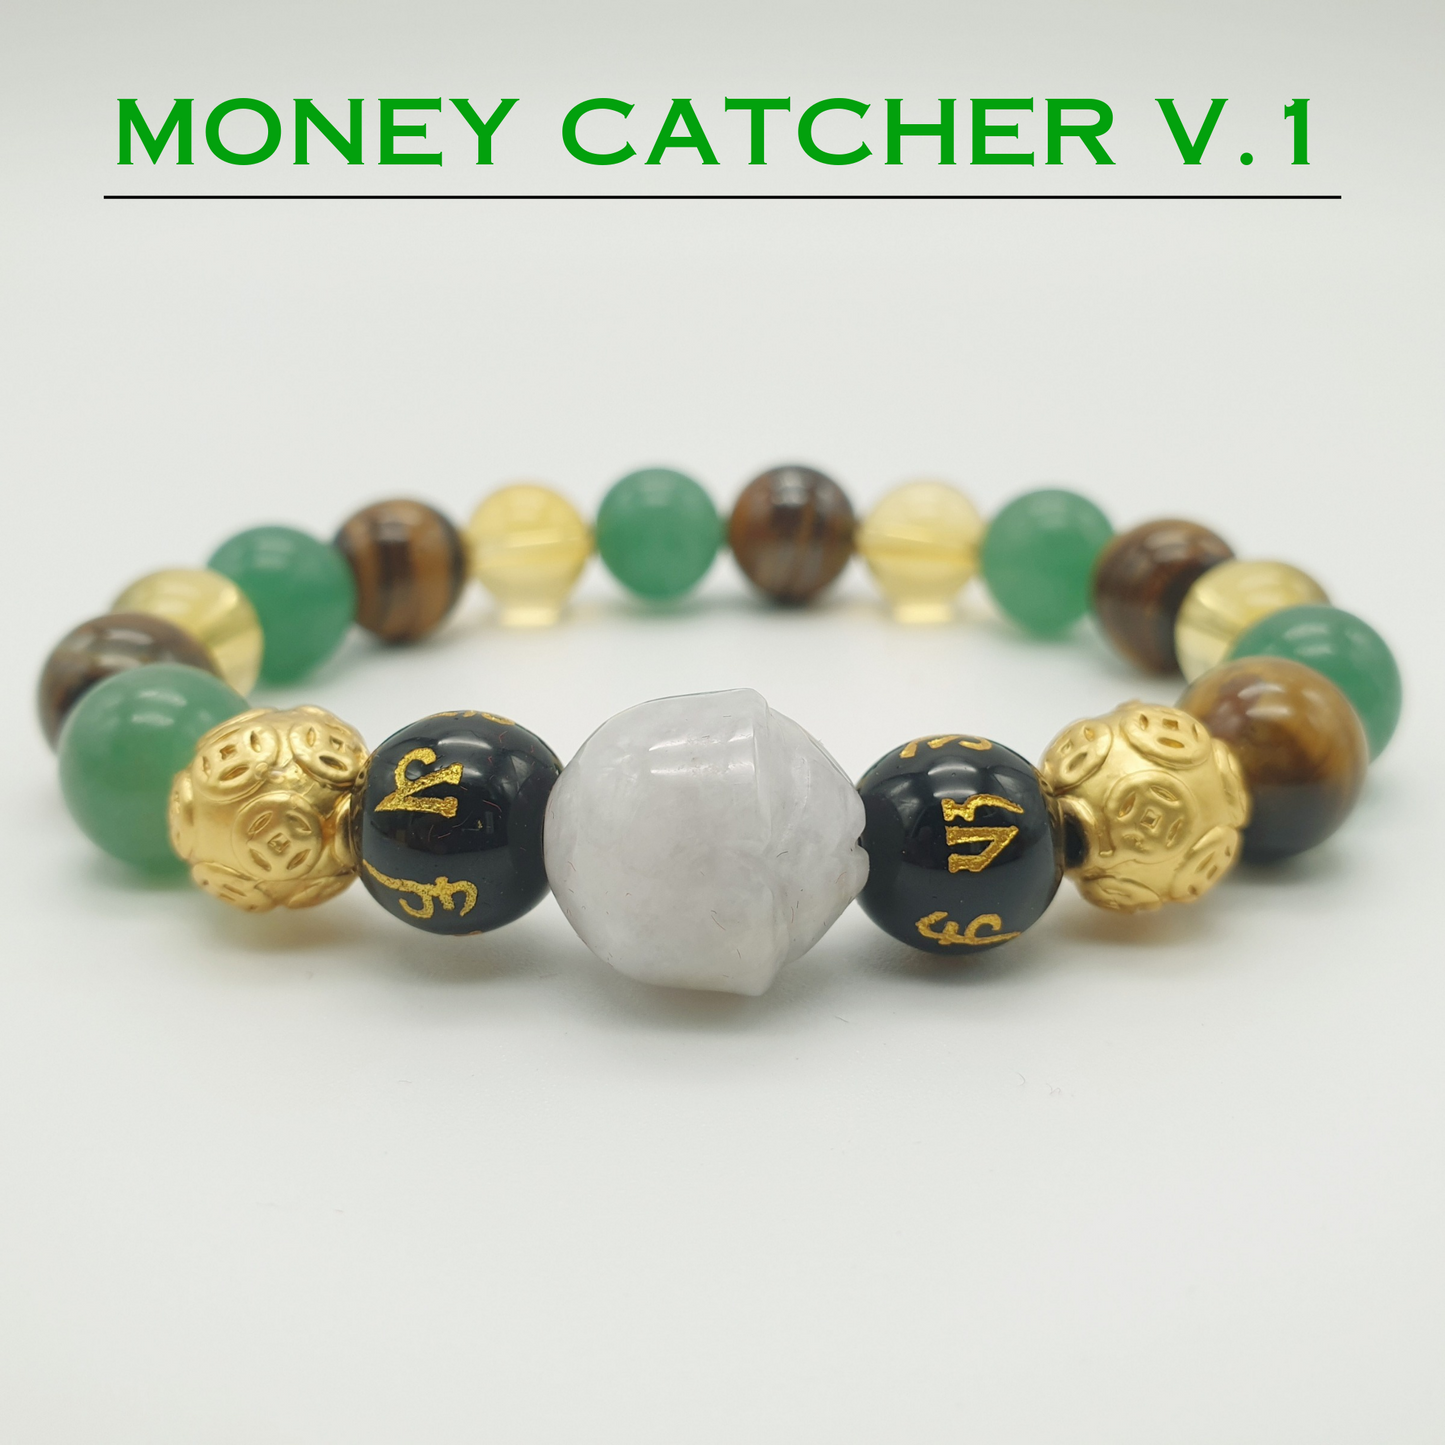 Authentic Money Catcher V.1